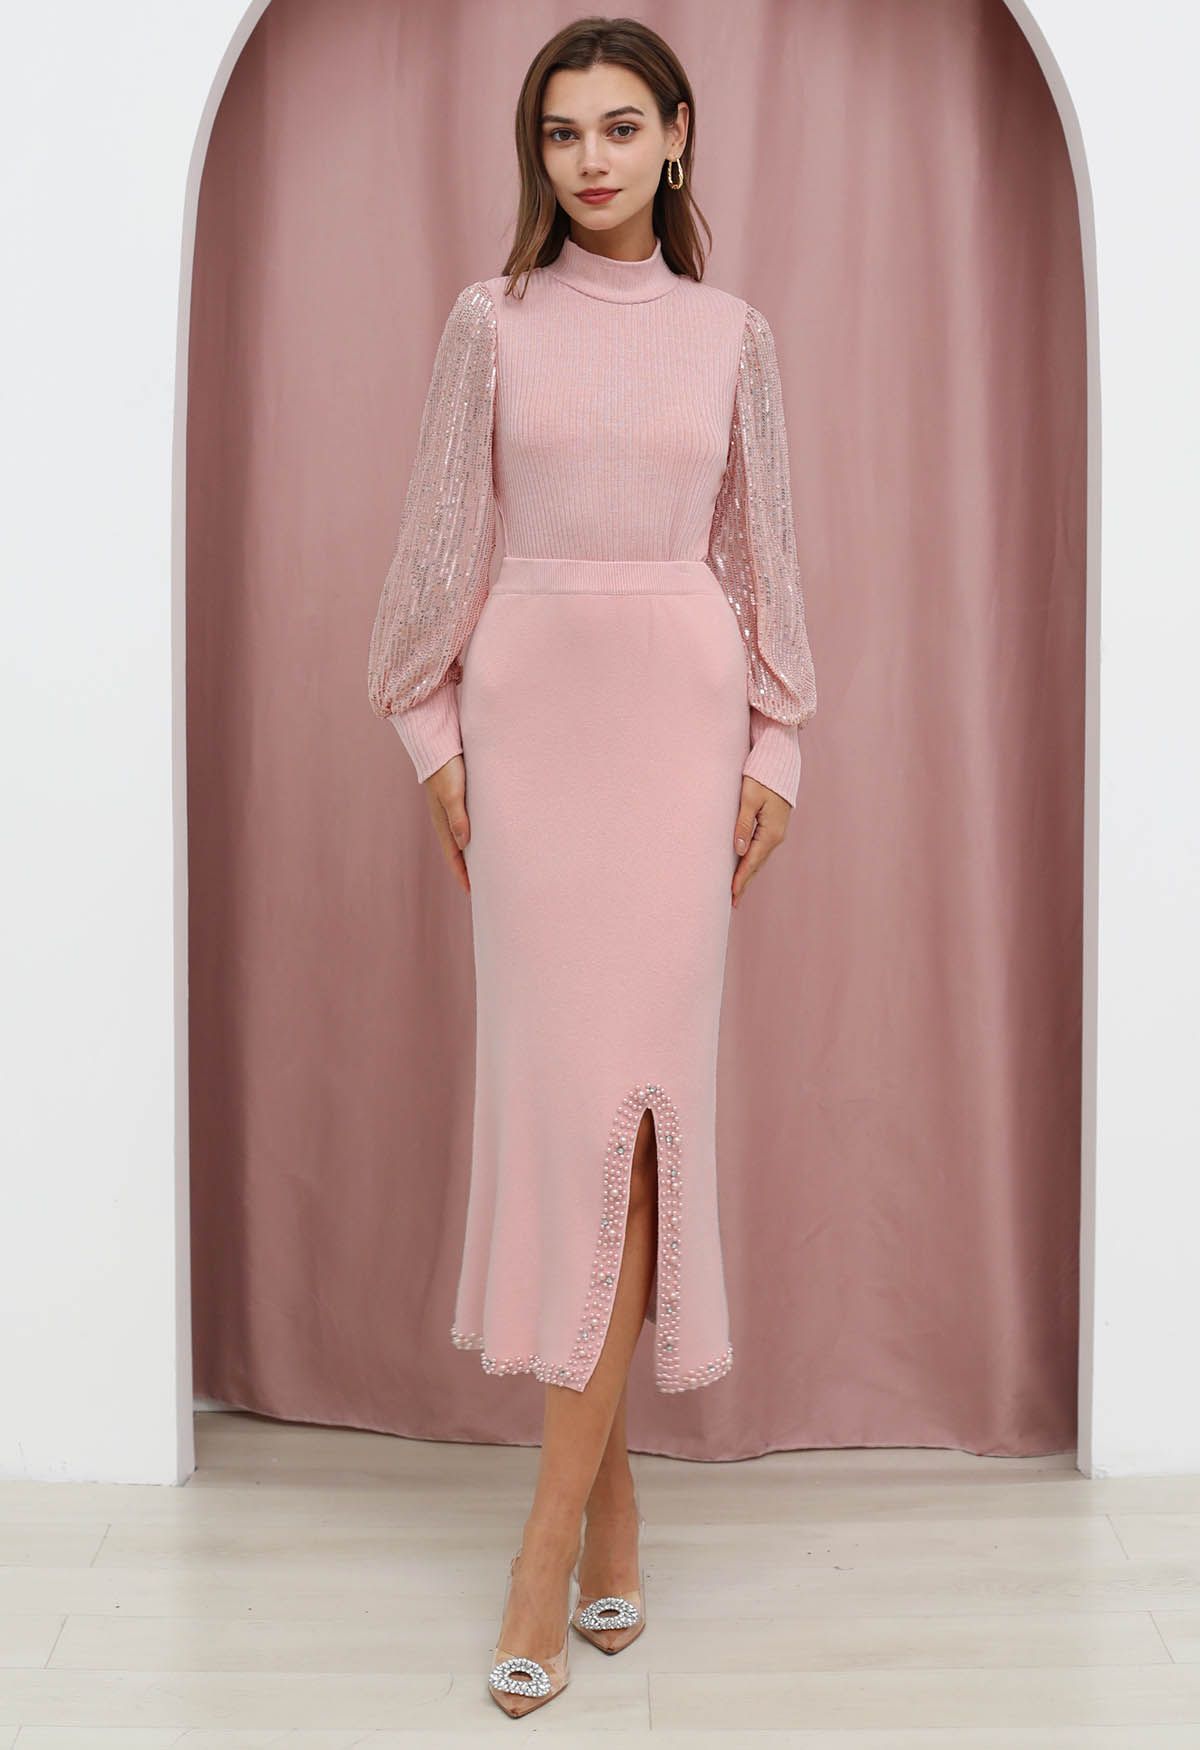 Pearl Embellished Slit Hem Knit Pencil Skirt in Light Pink